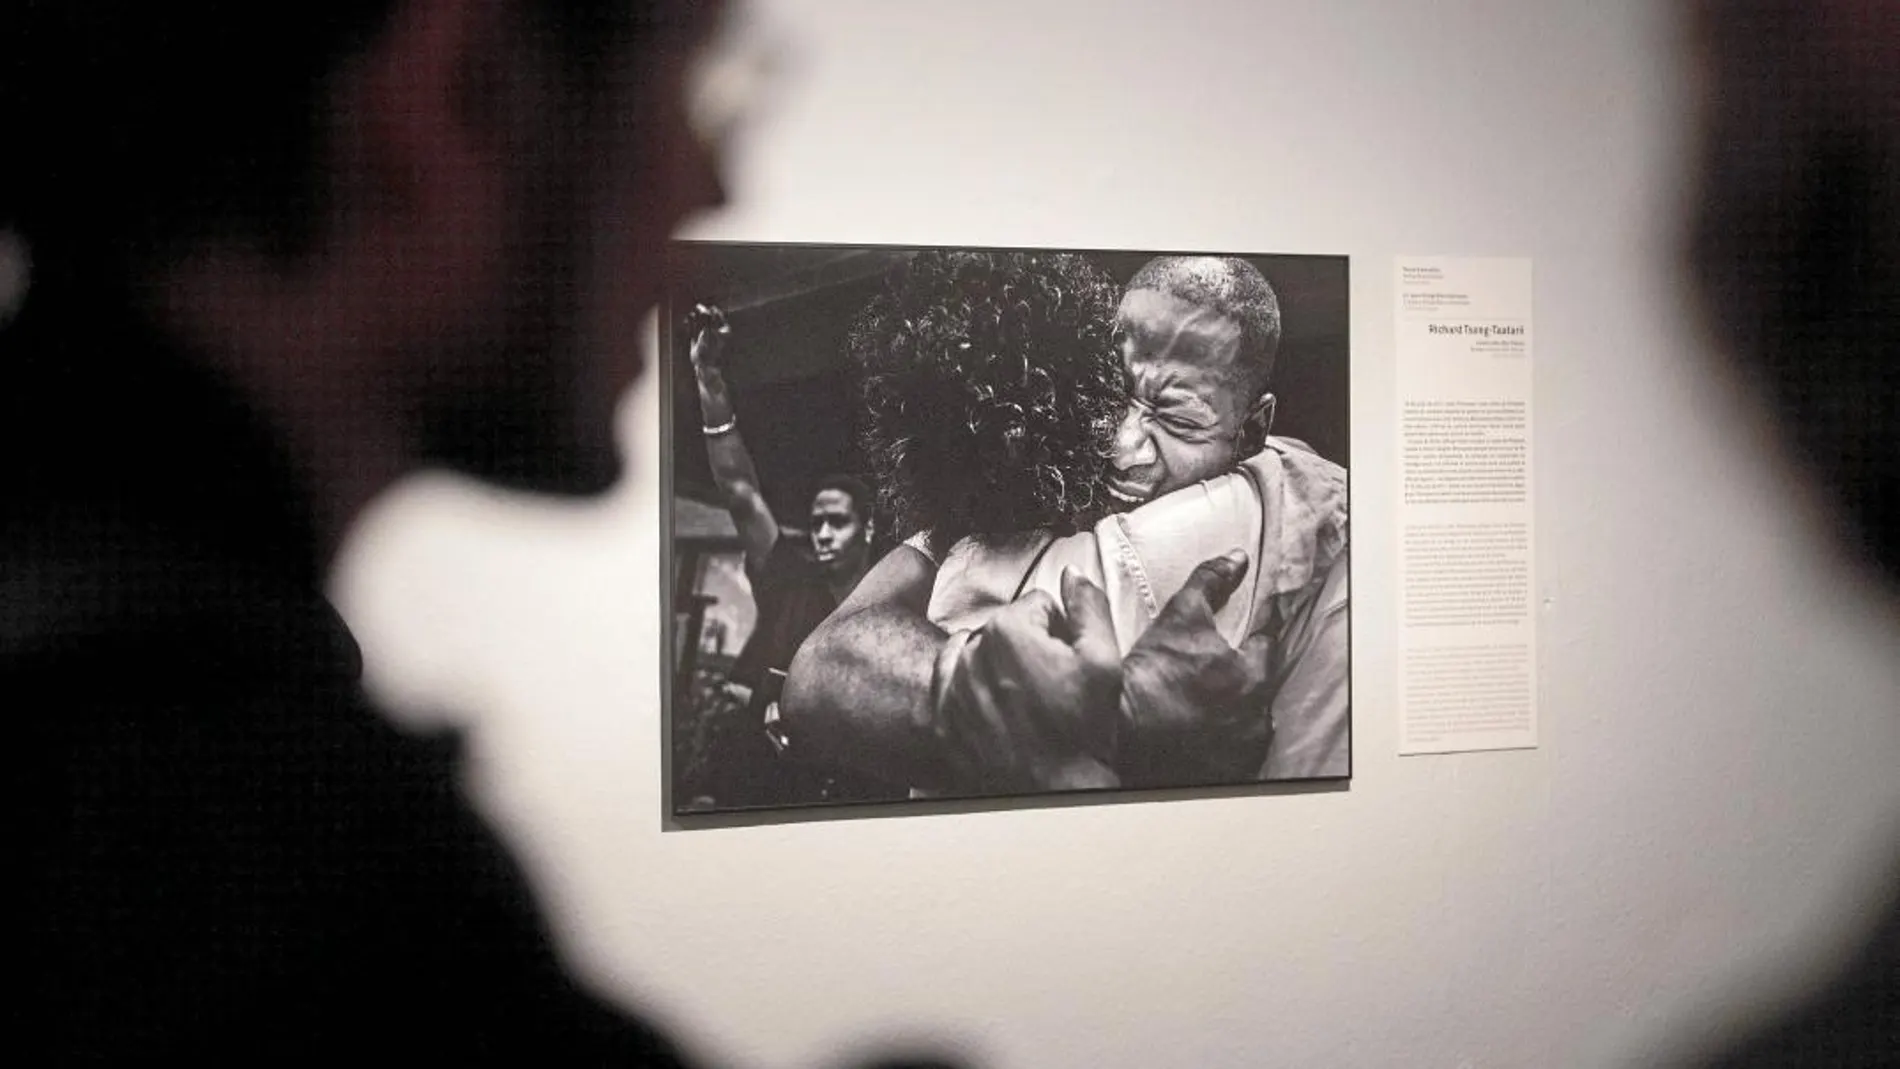 Dos personas contemplan una de las fotografías de la exposición, obra de Richard Song.